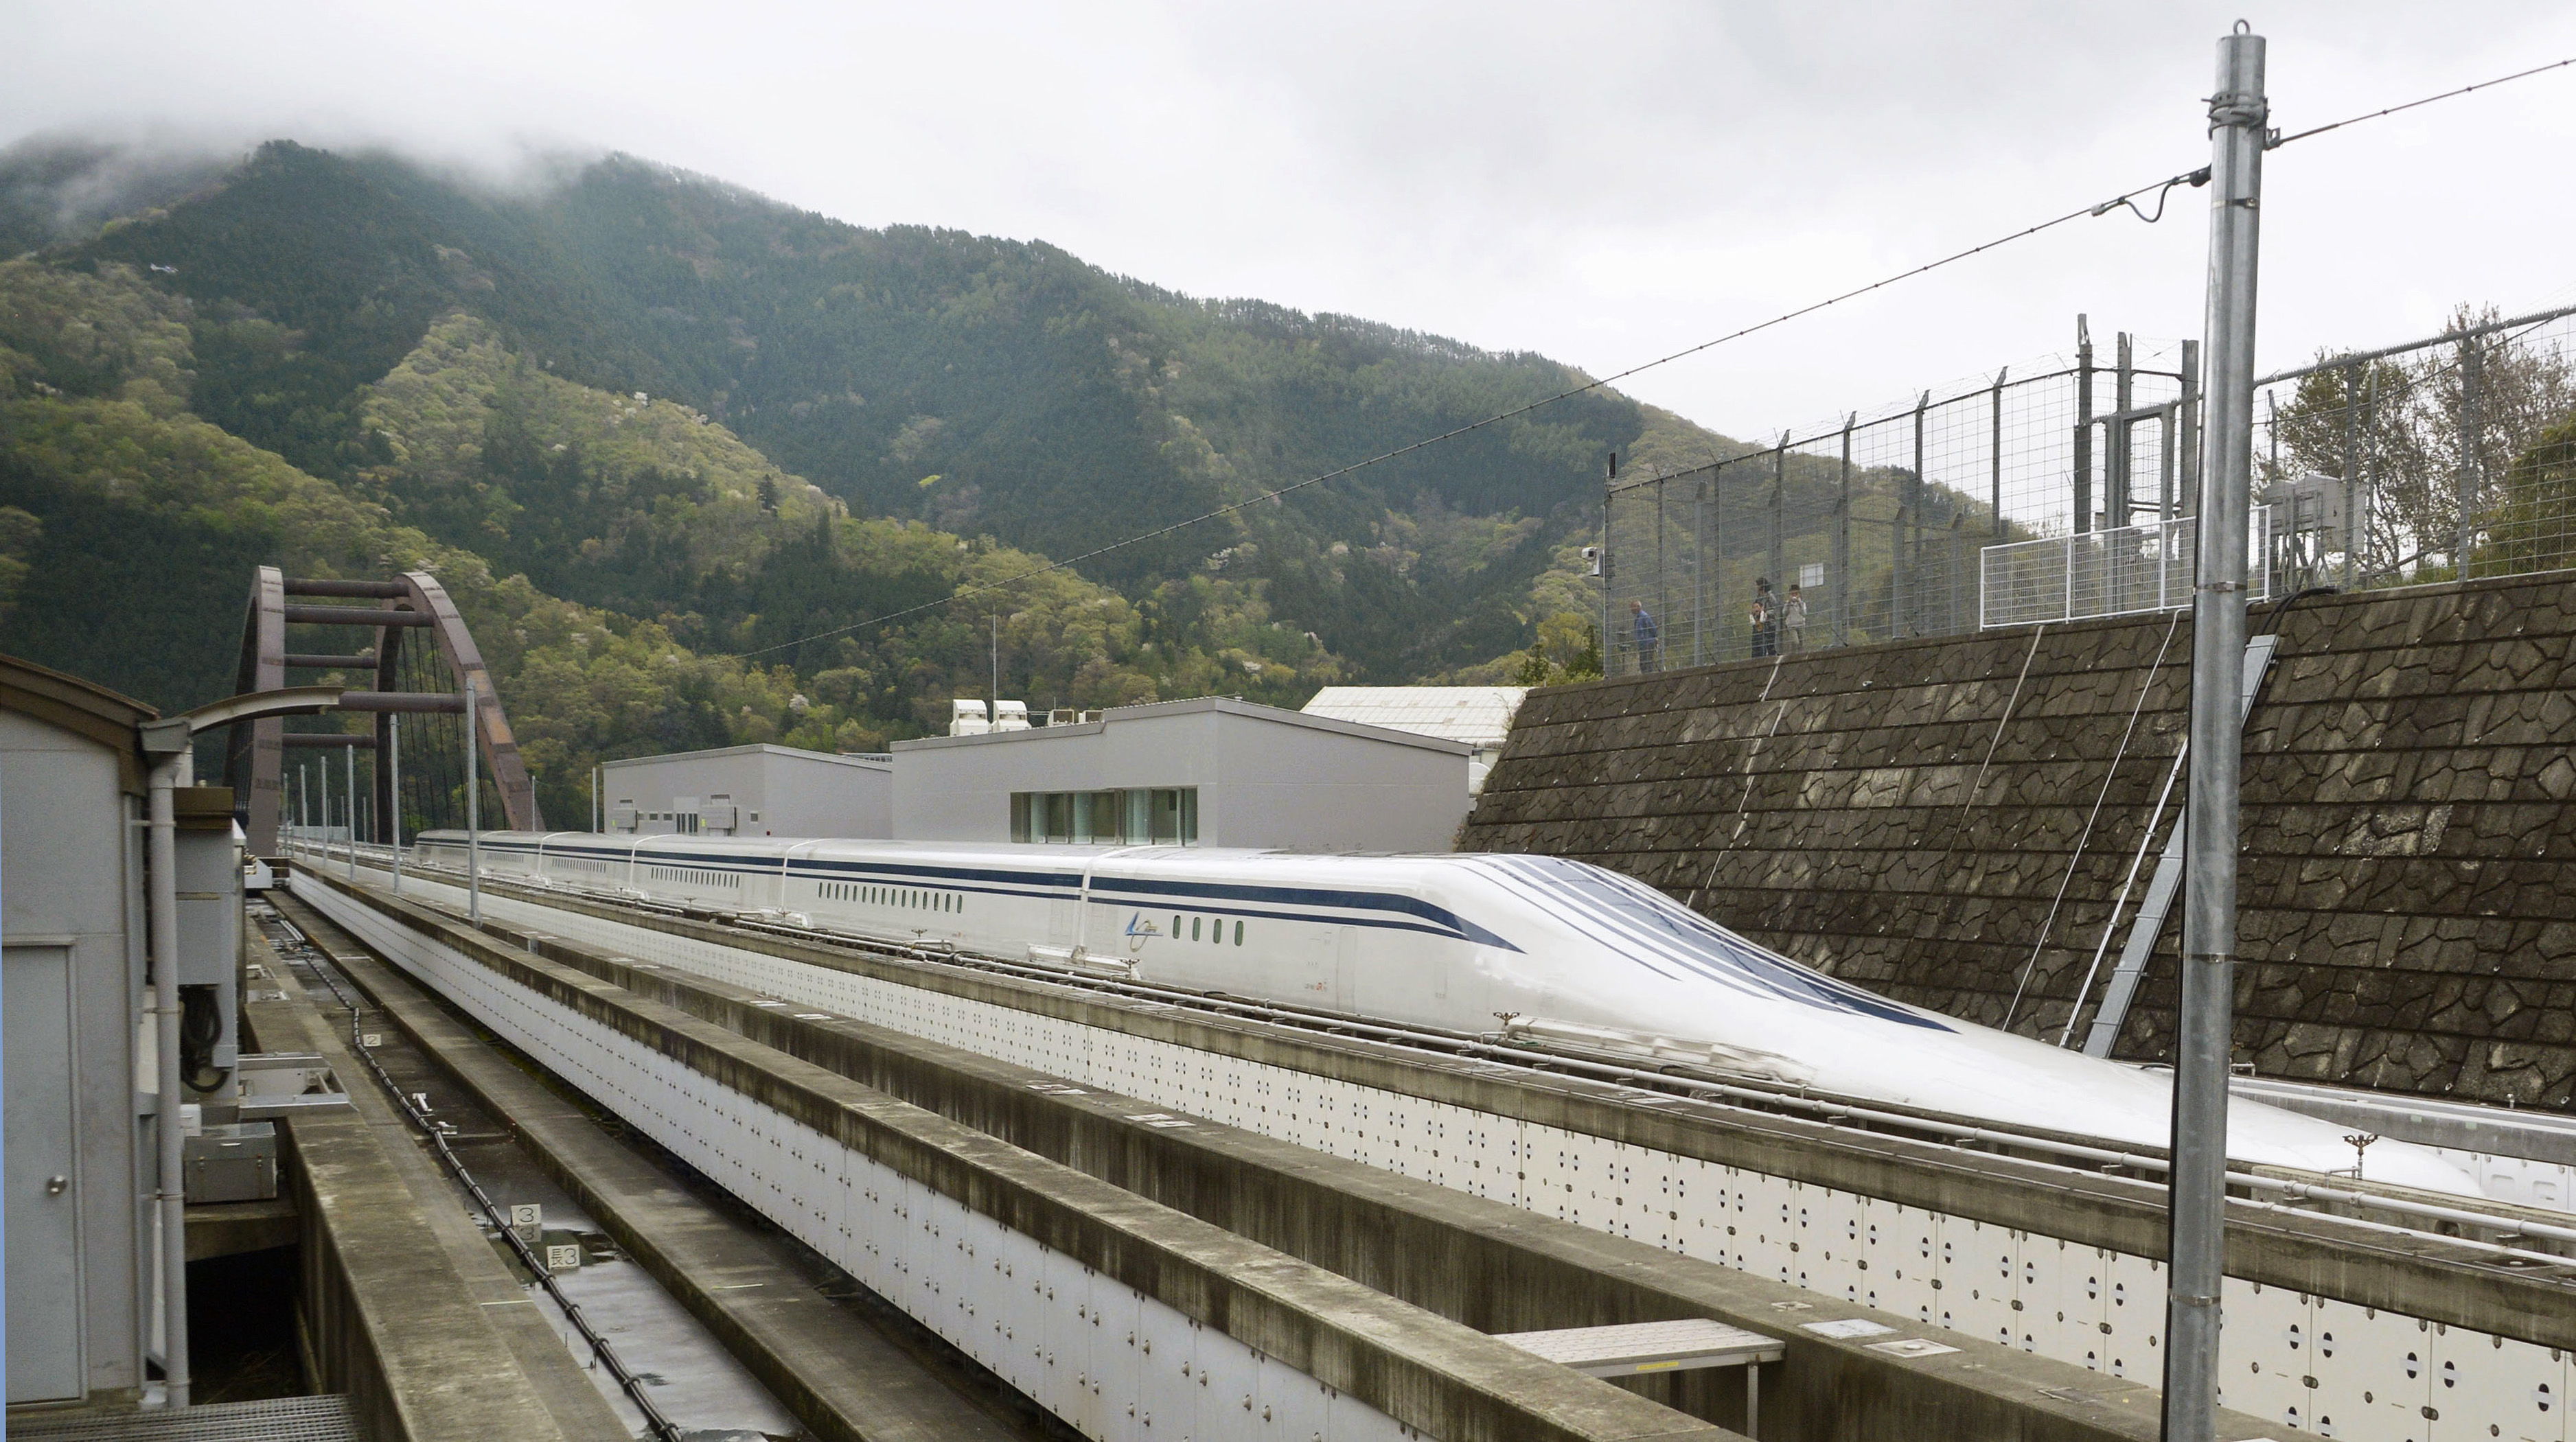 Tren maglev japonés bate su récord de velocidad a 603 kph